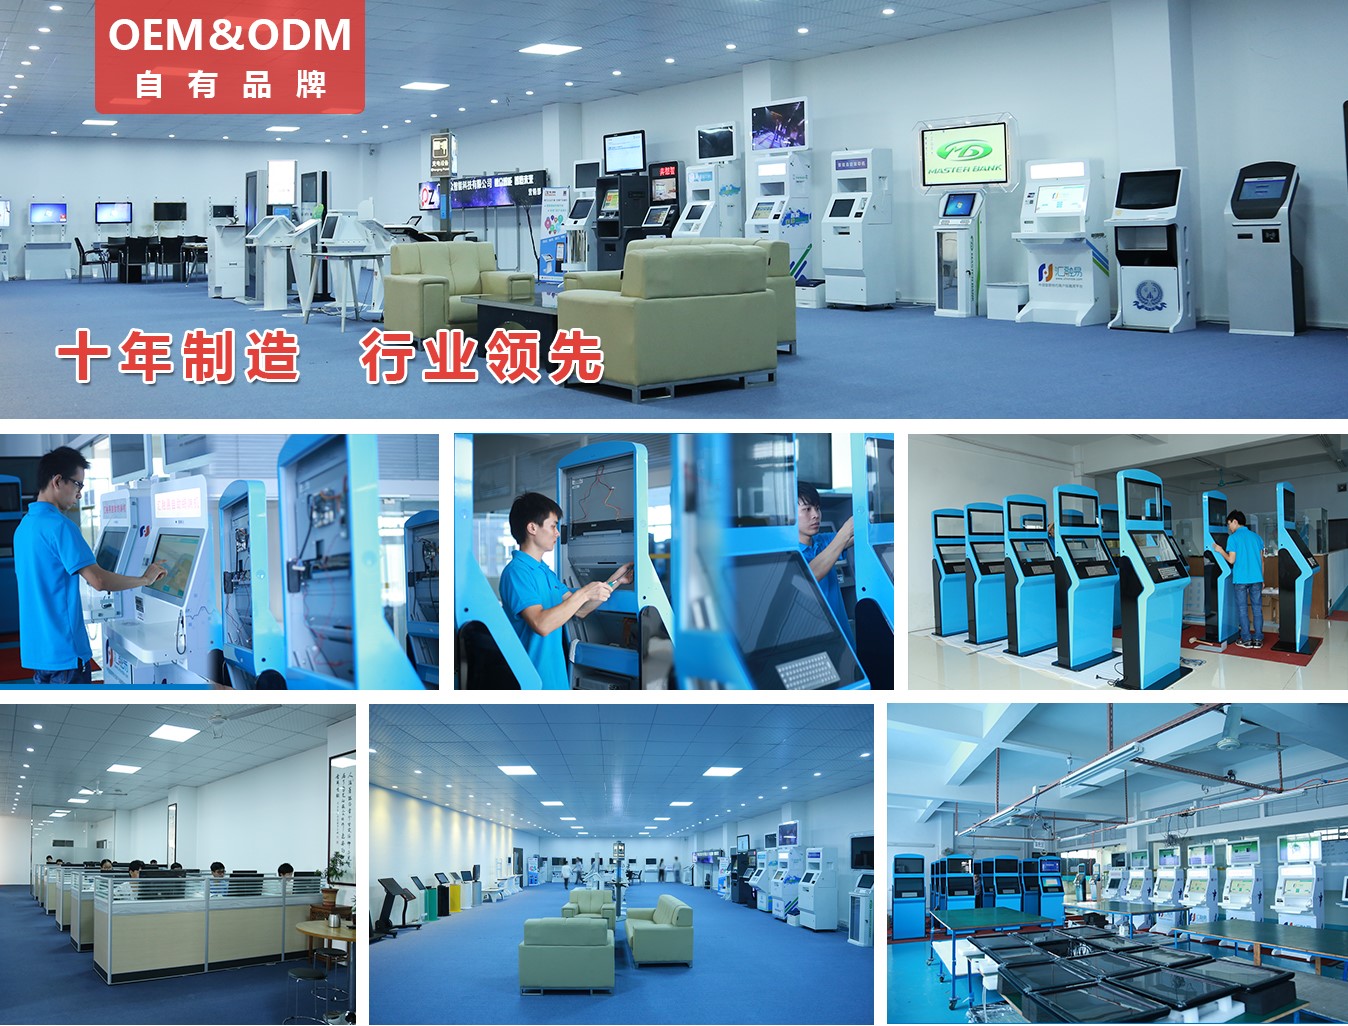 65寸壁挂式广告机PZ-65BE--广州磐众智能科技有限公司